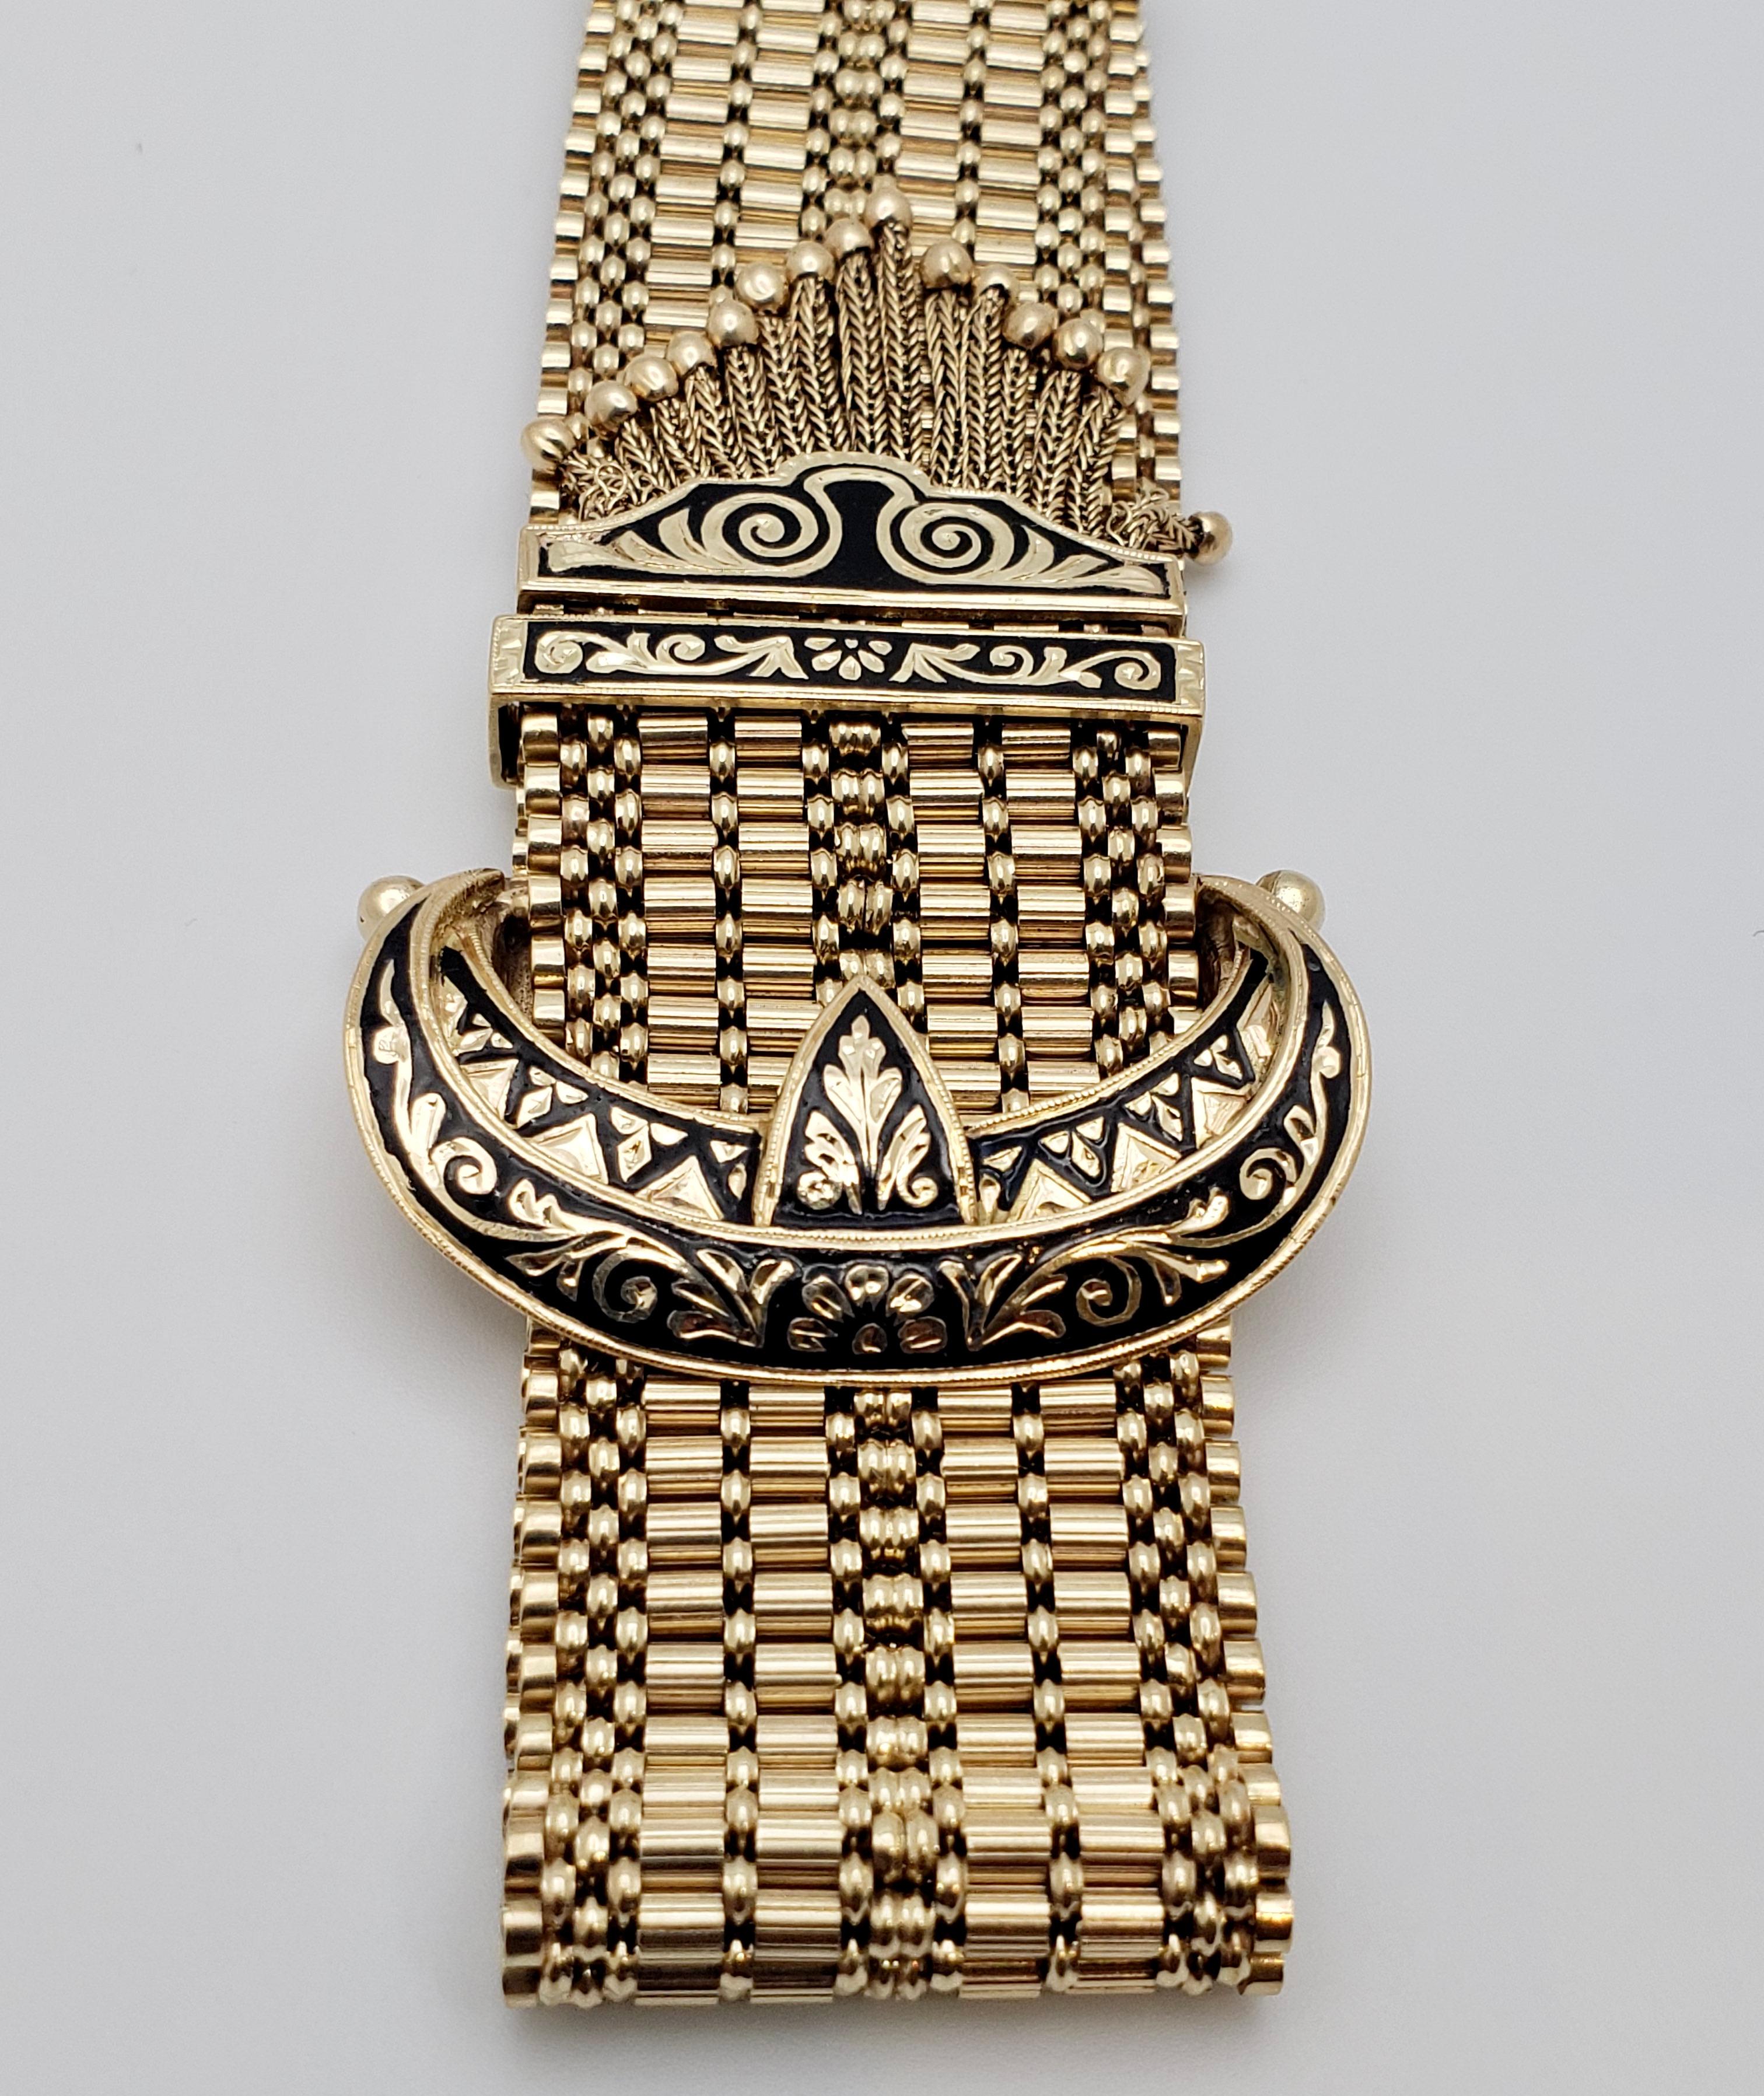 Un authentique bracelet à glands en or jaune 14K de l'époque victorienne. Le bracelet en maille d'or se termine par une pampille multi-franges et est monté avec un fermoir à glissière en forme de croissant de lune, décoré d'émail noir, qui permet